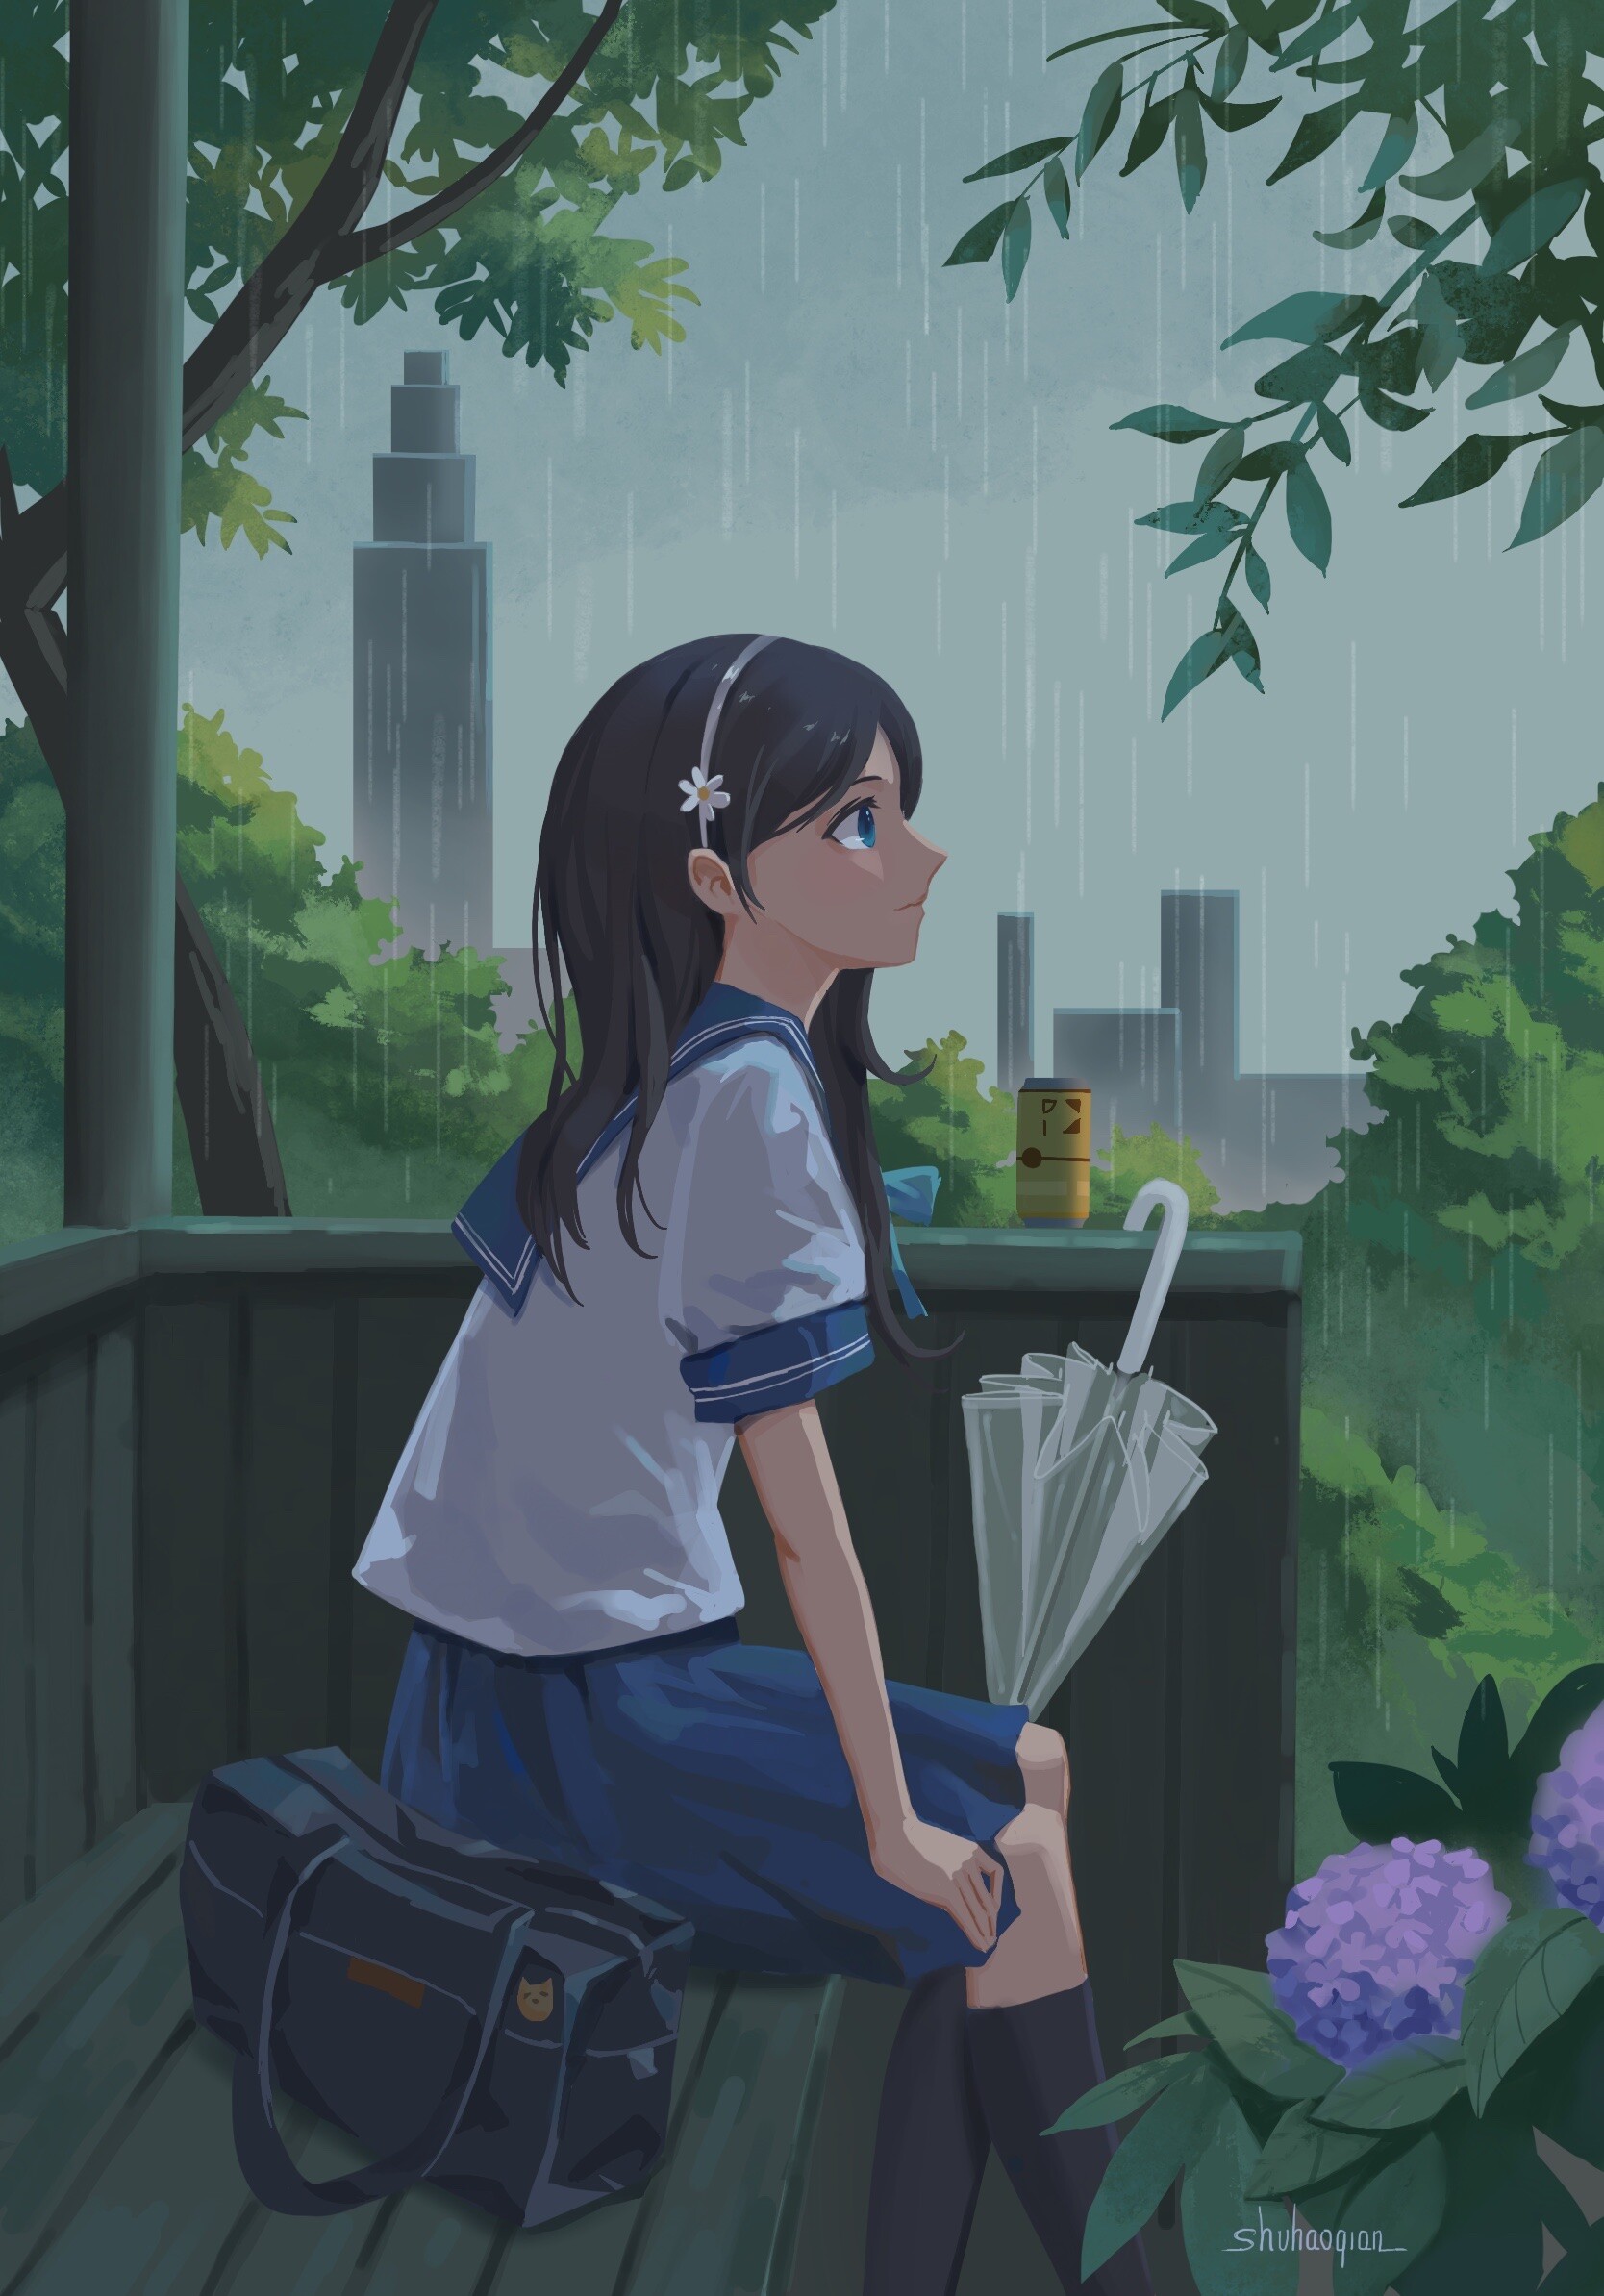 ArtStation - summer rain